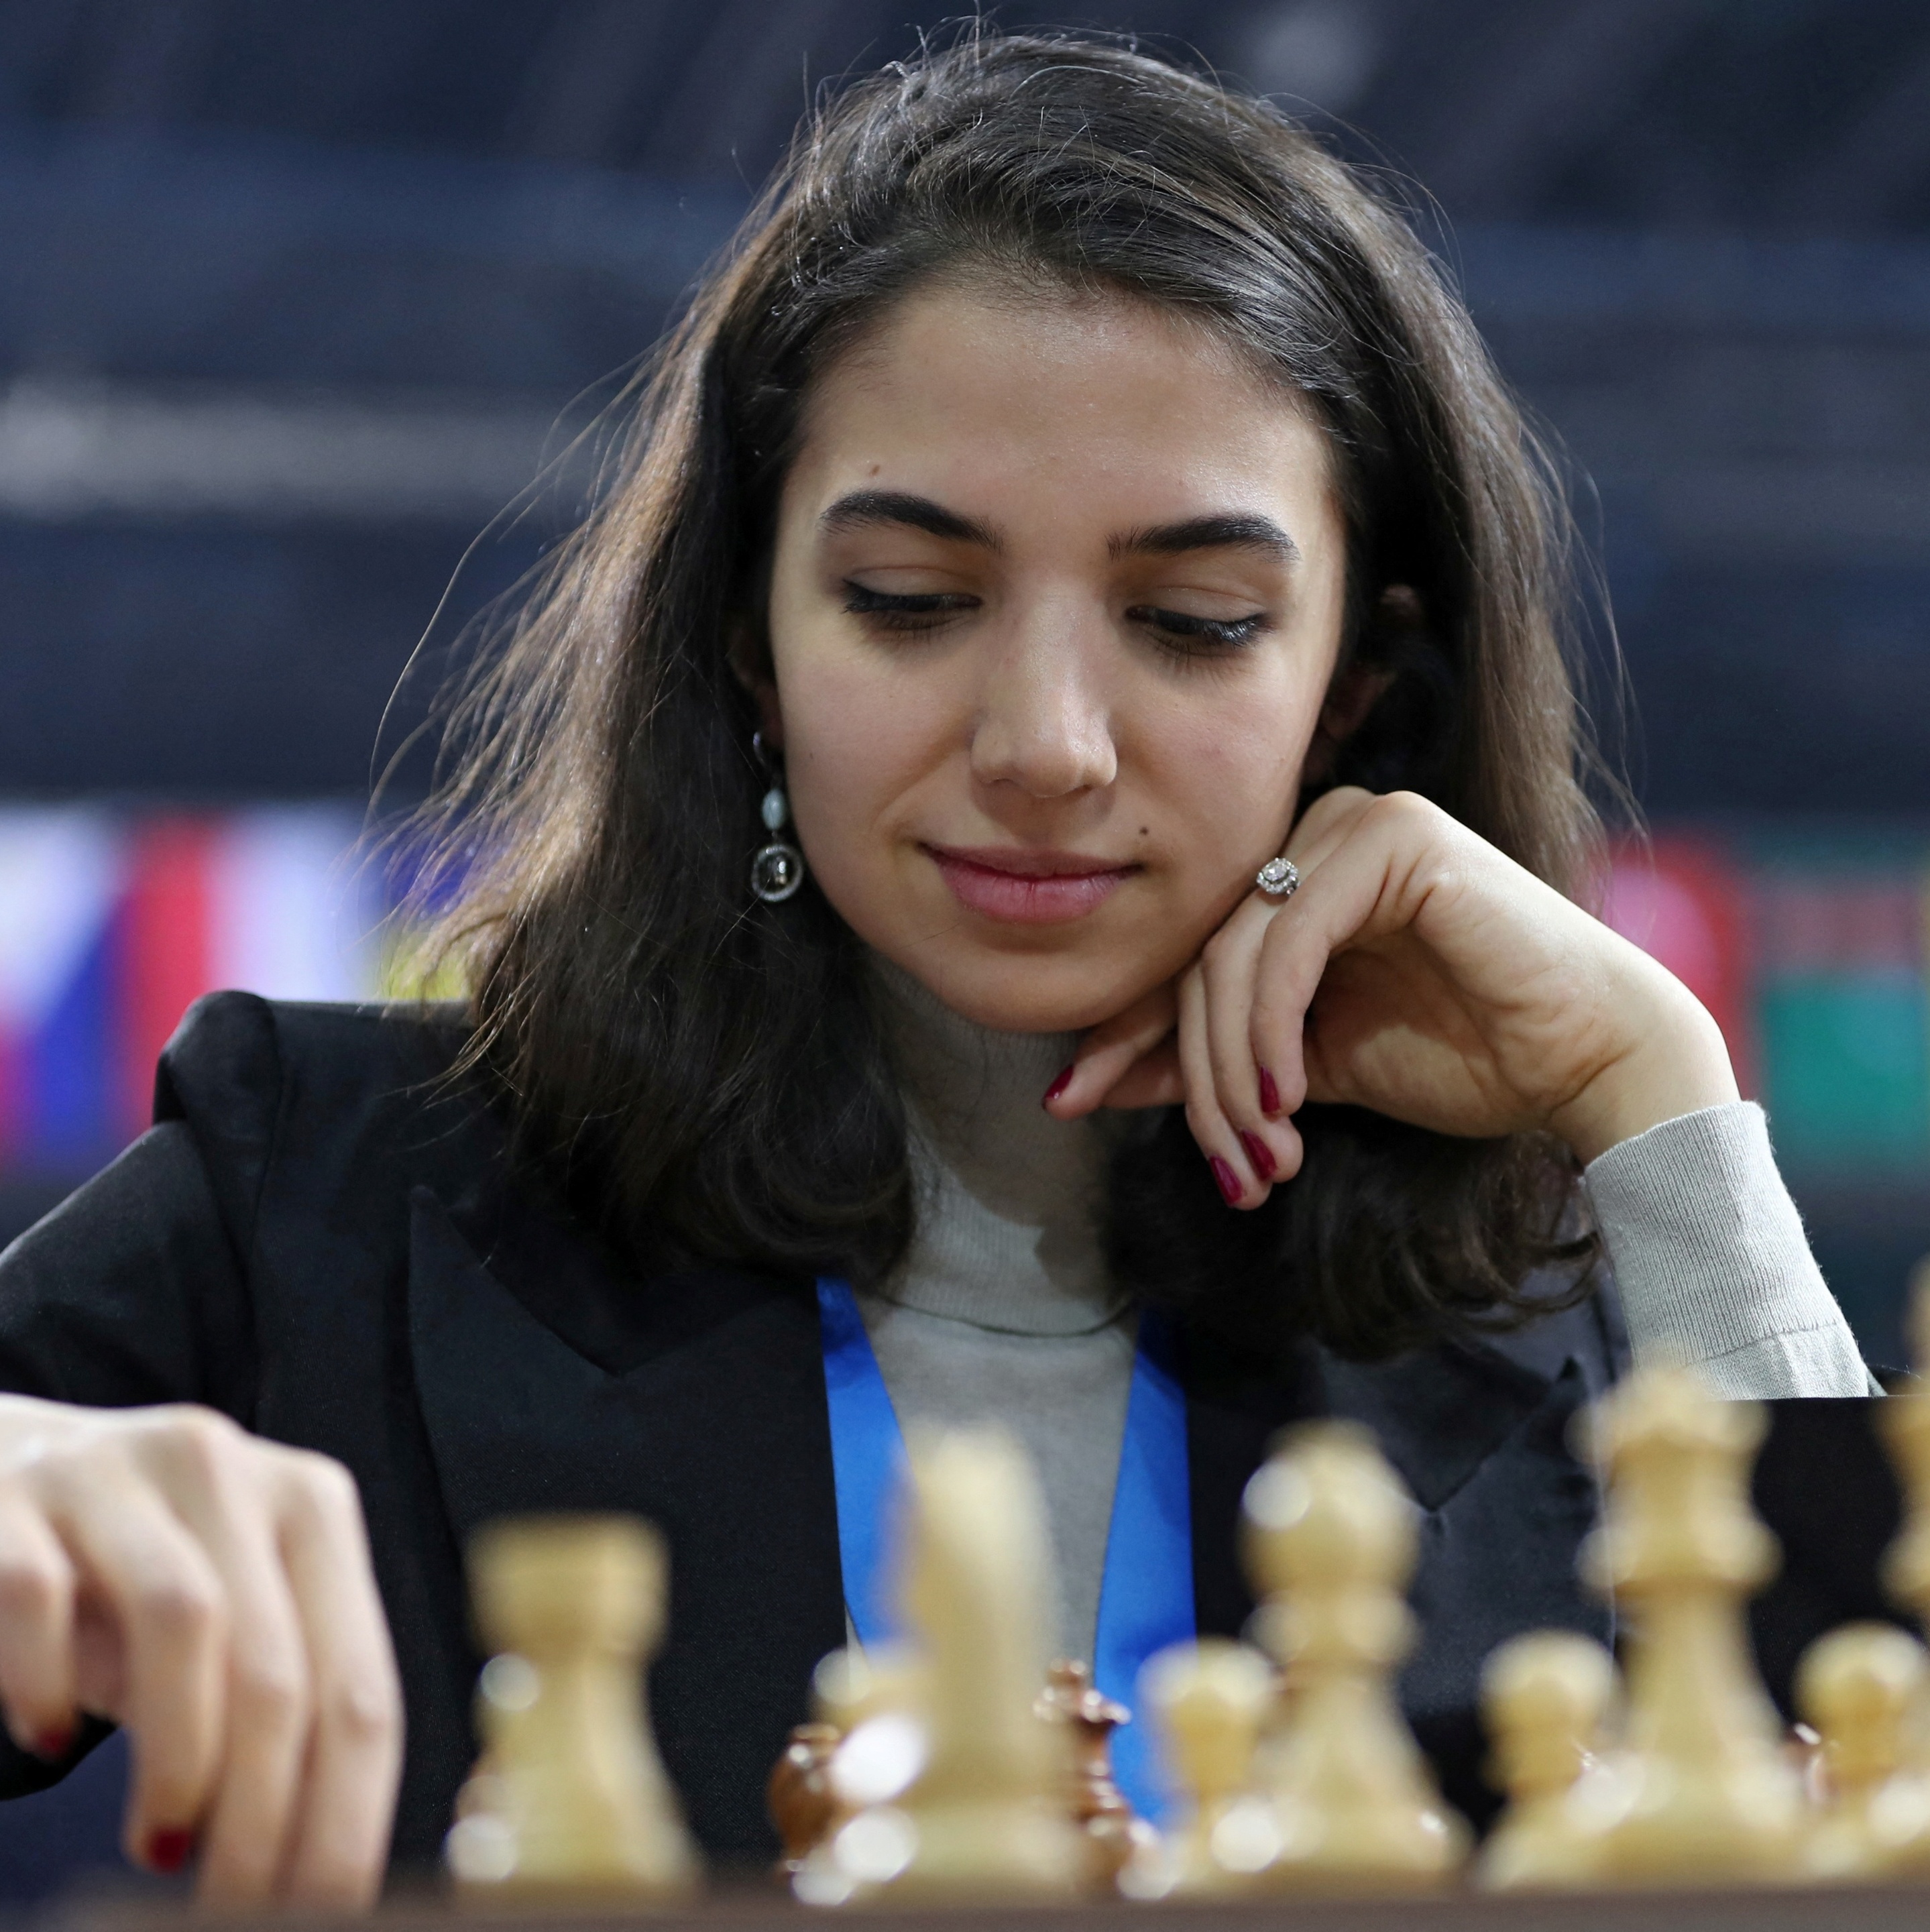 Campeã mundial de xadrez não competirá na Arábia Saudita por ter